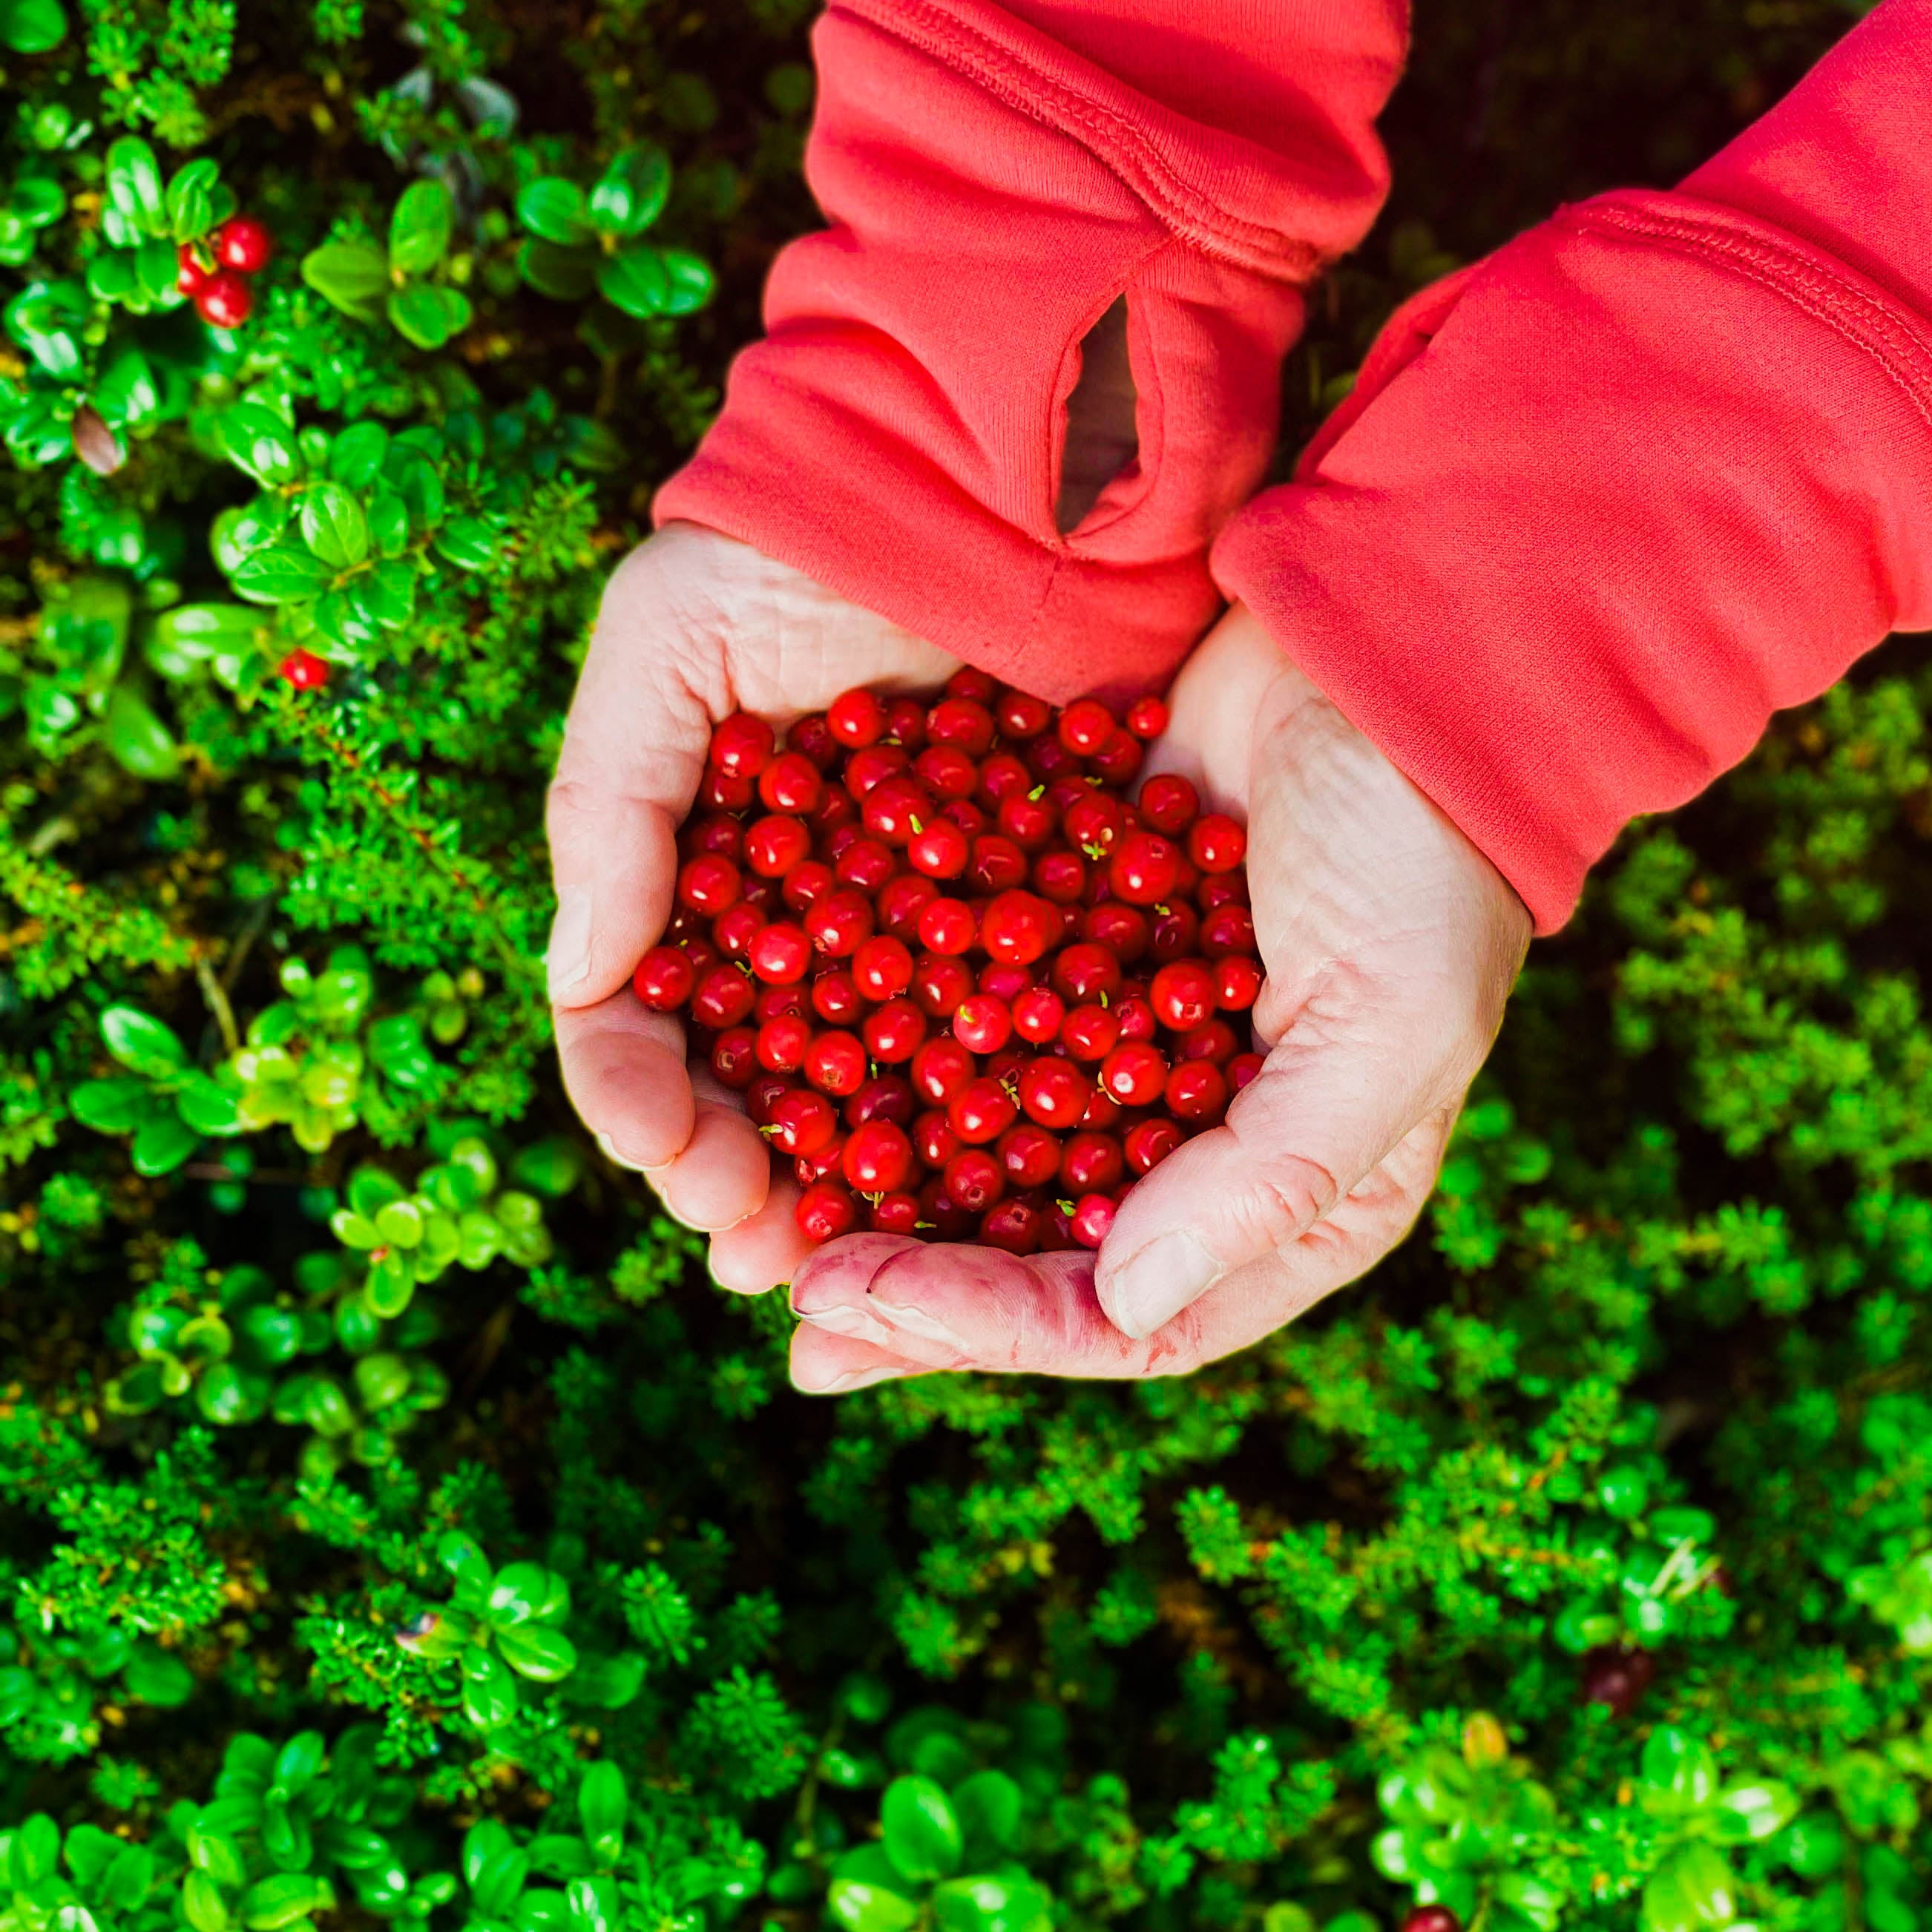 Hands full of Lingon berries 